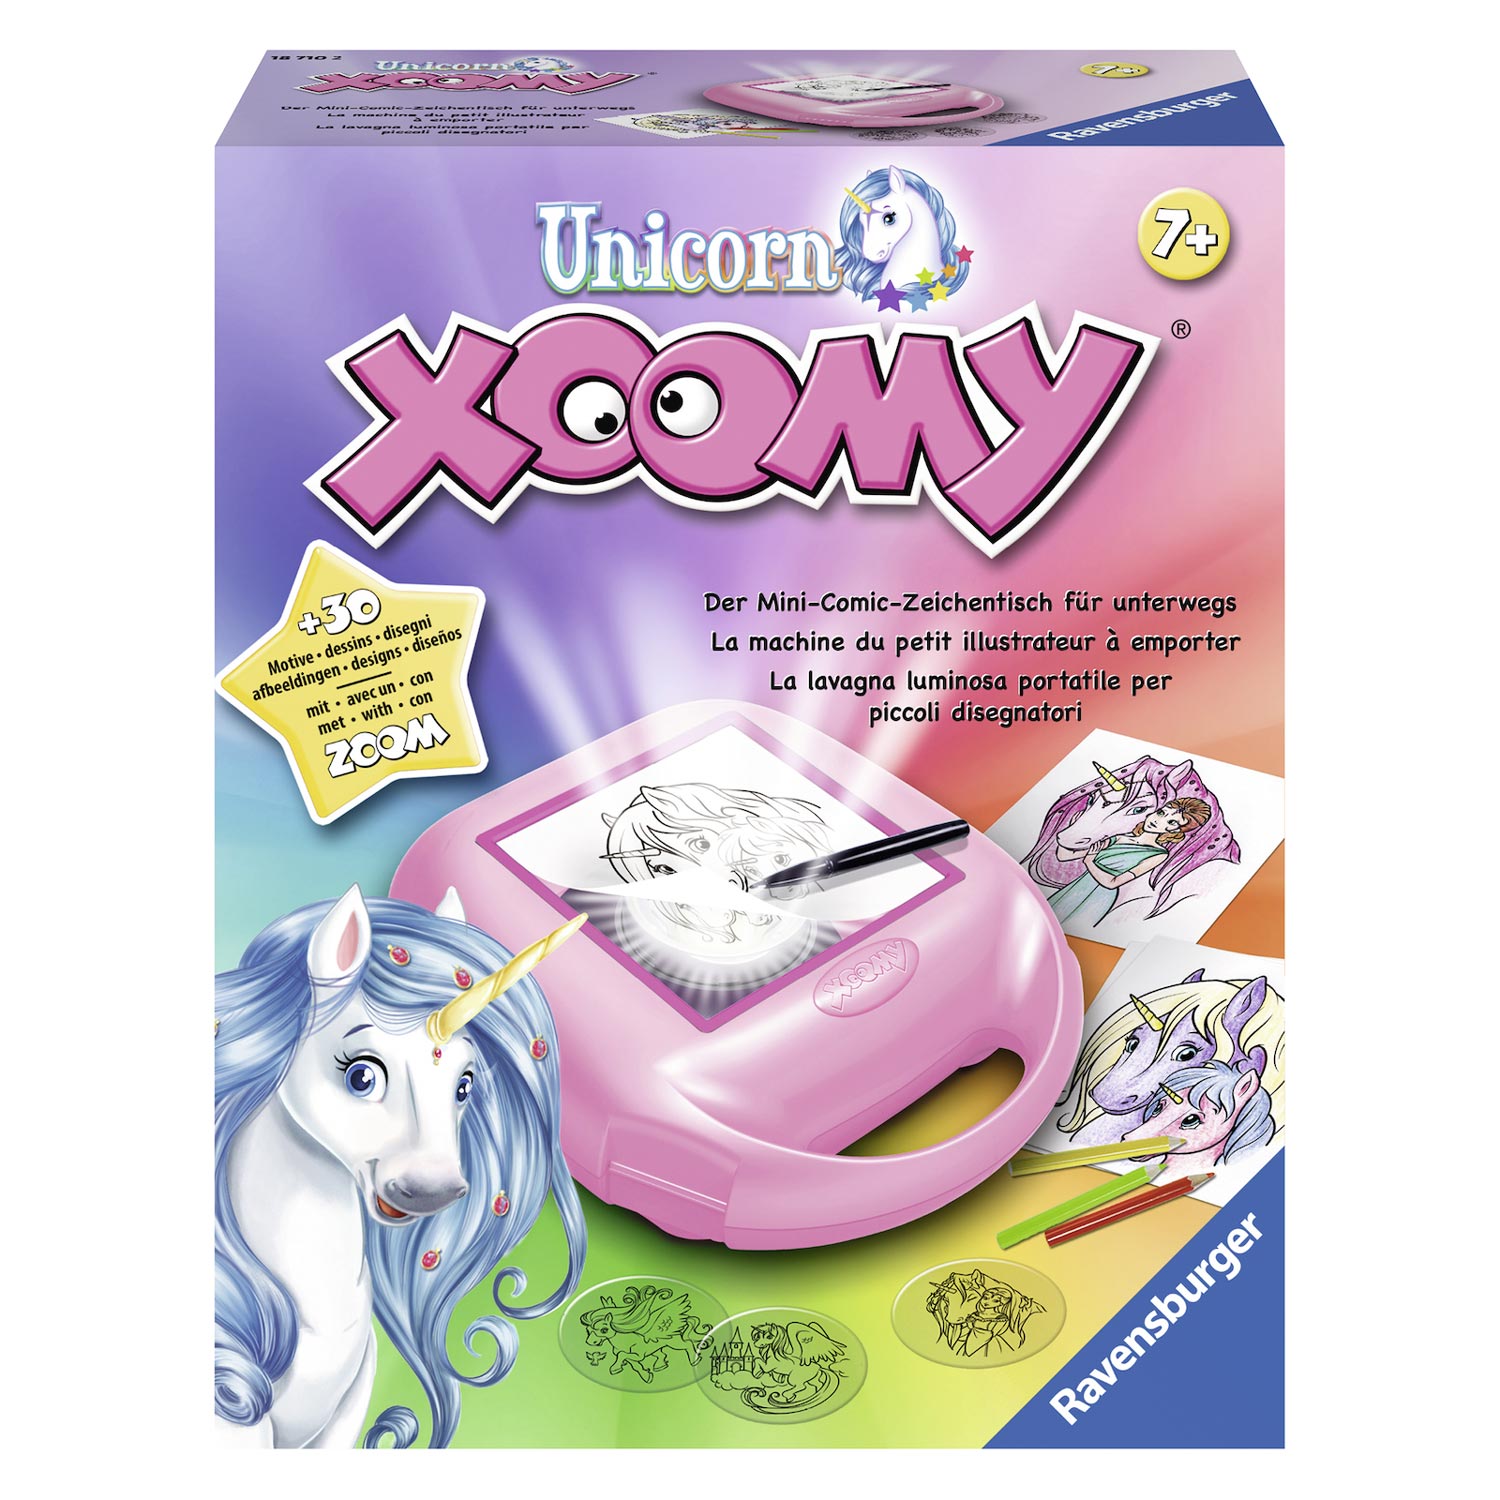 Xoomy Compact Unicorns